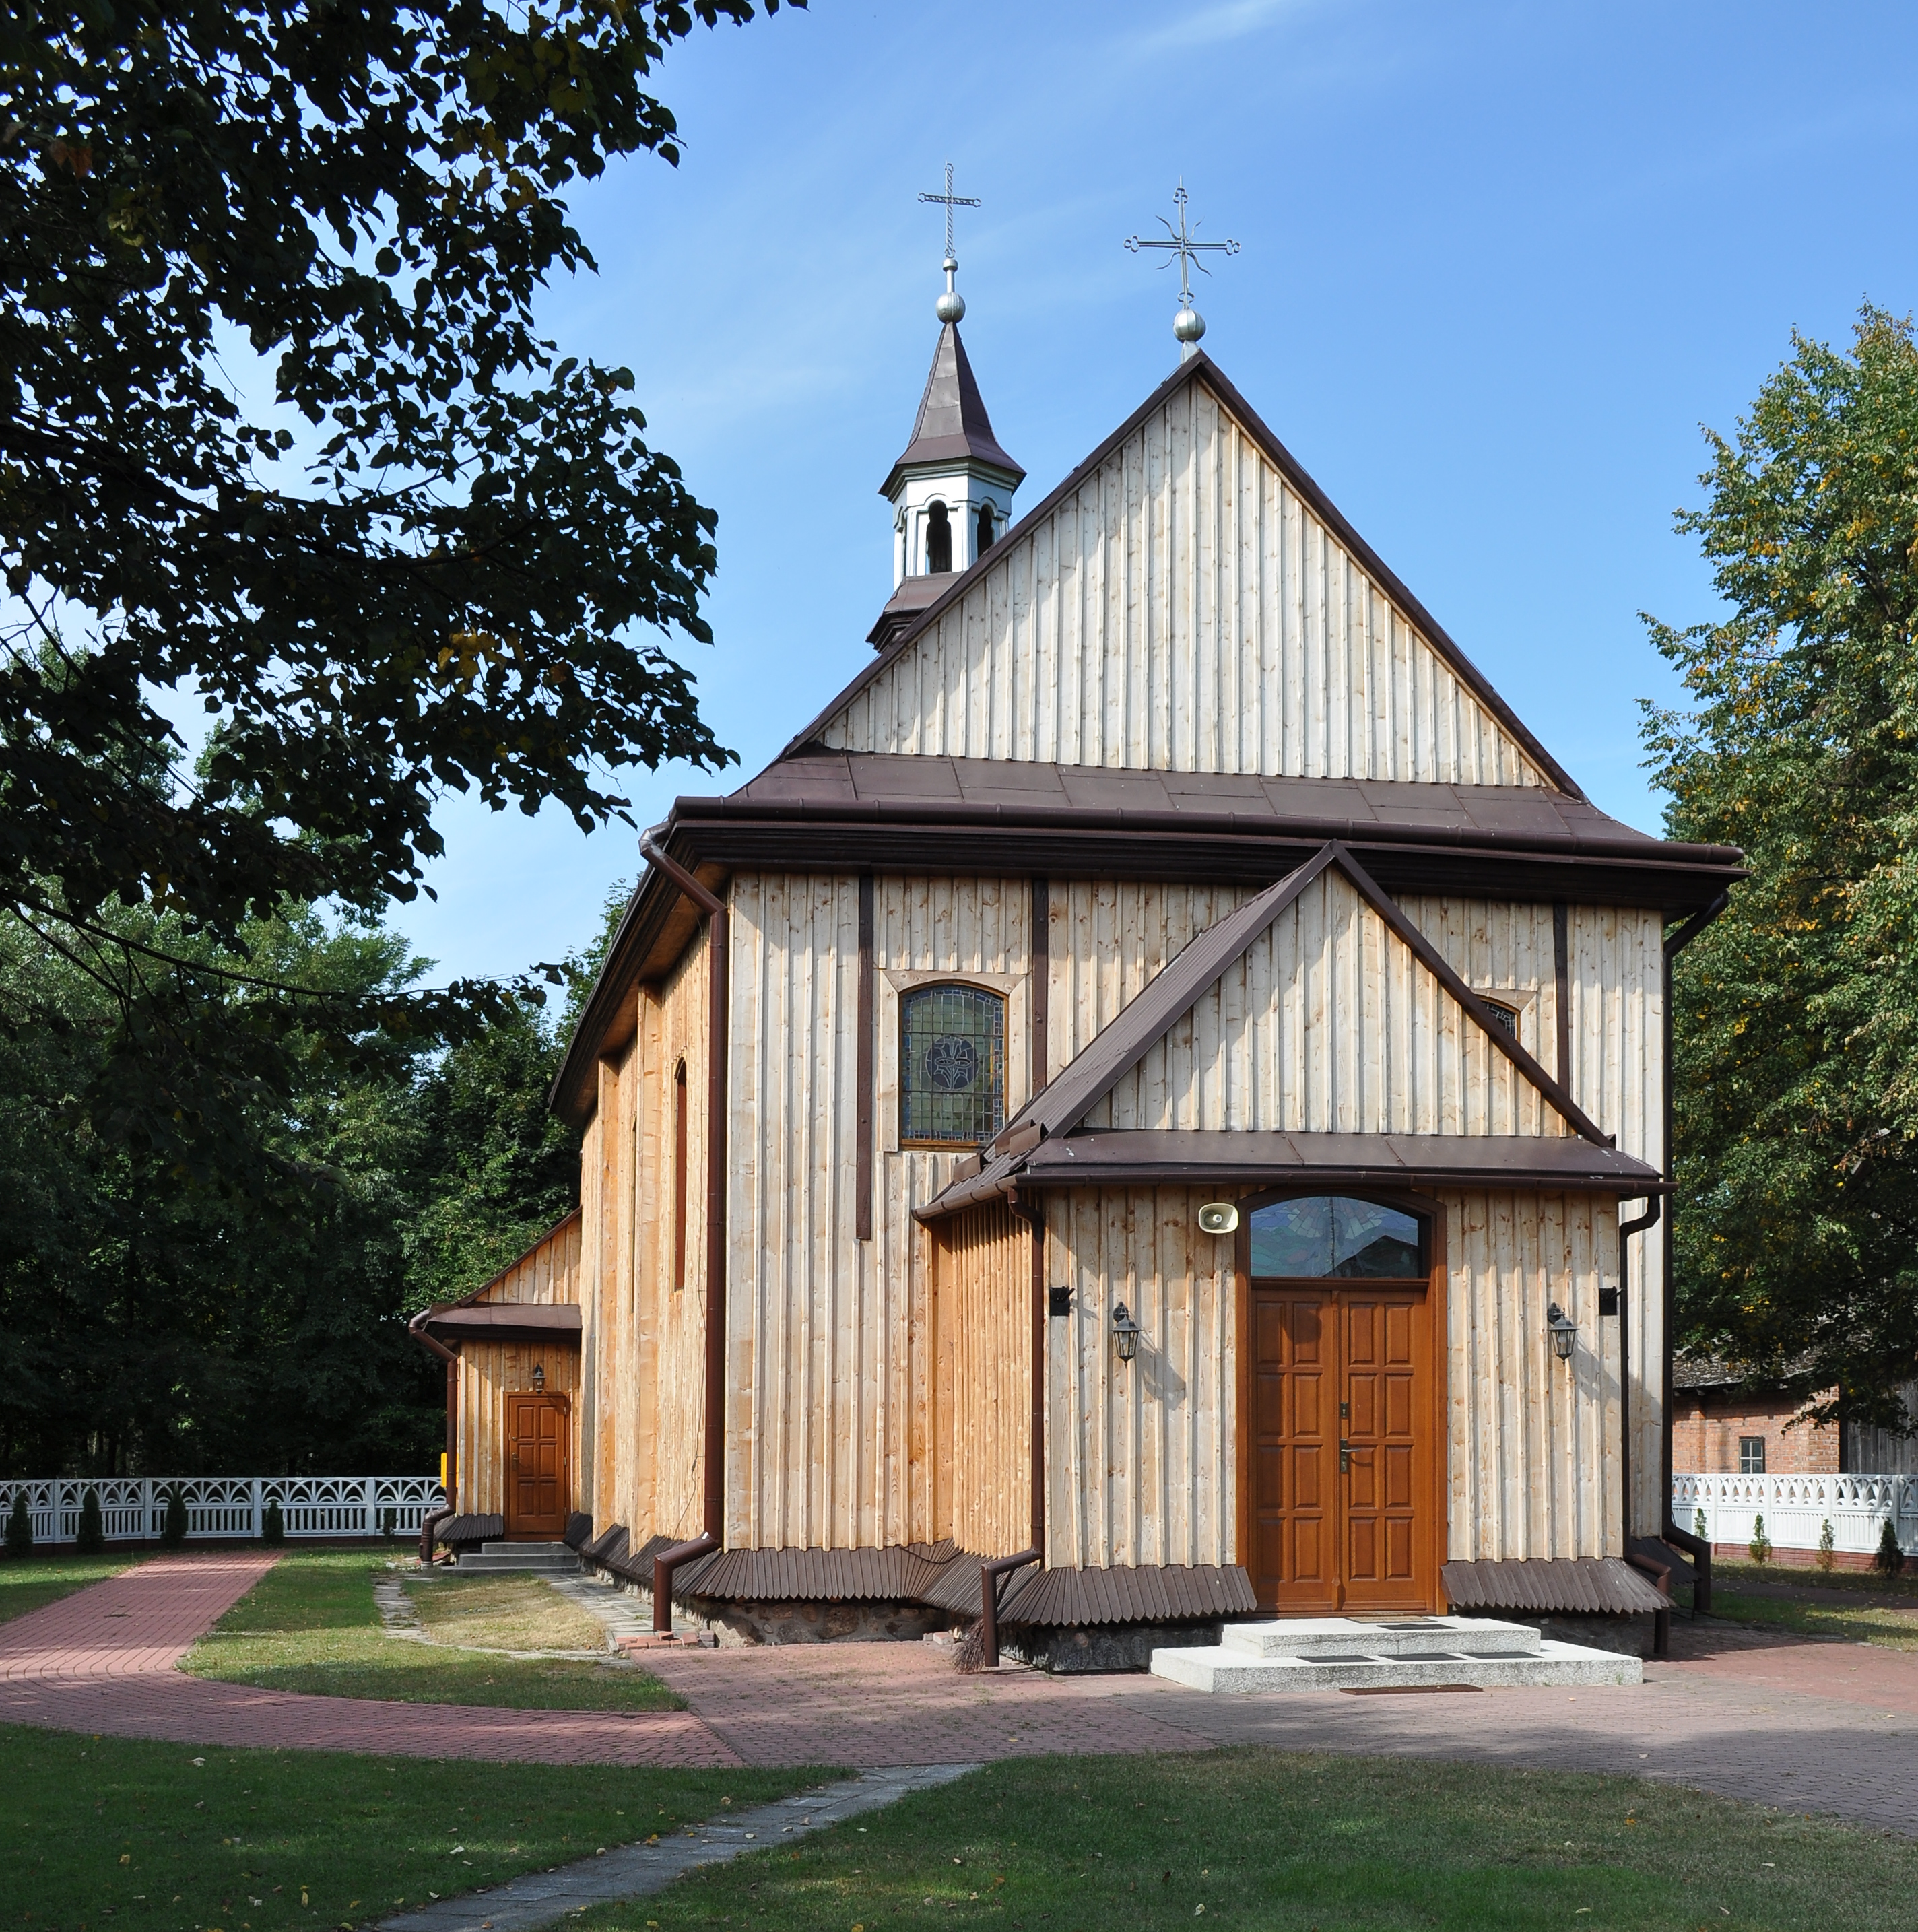 PL - Sarnów (powiat mielecki) - kościół Najświętszego Serca Pana Jezusa - Kroton 003